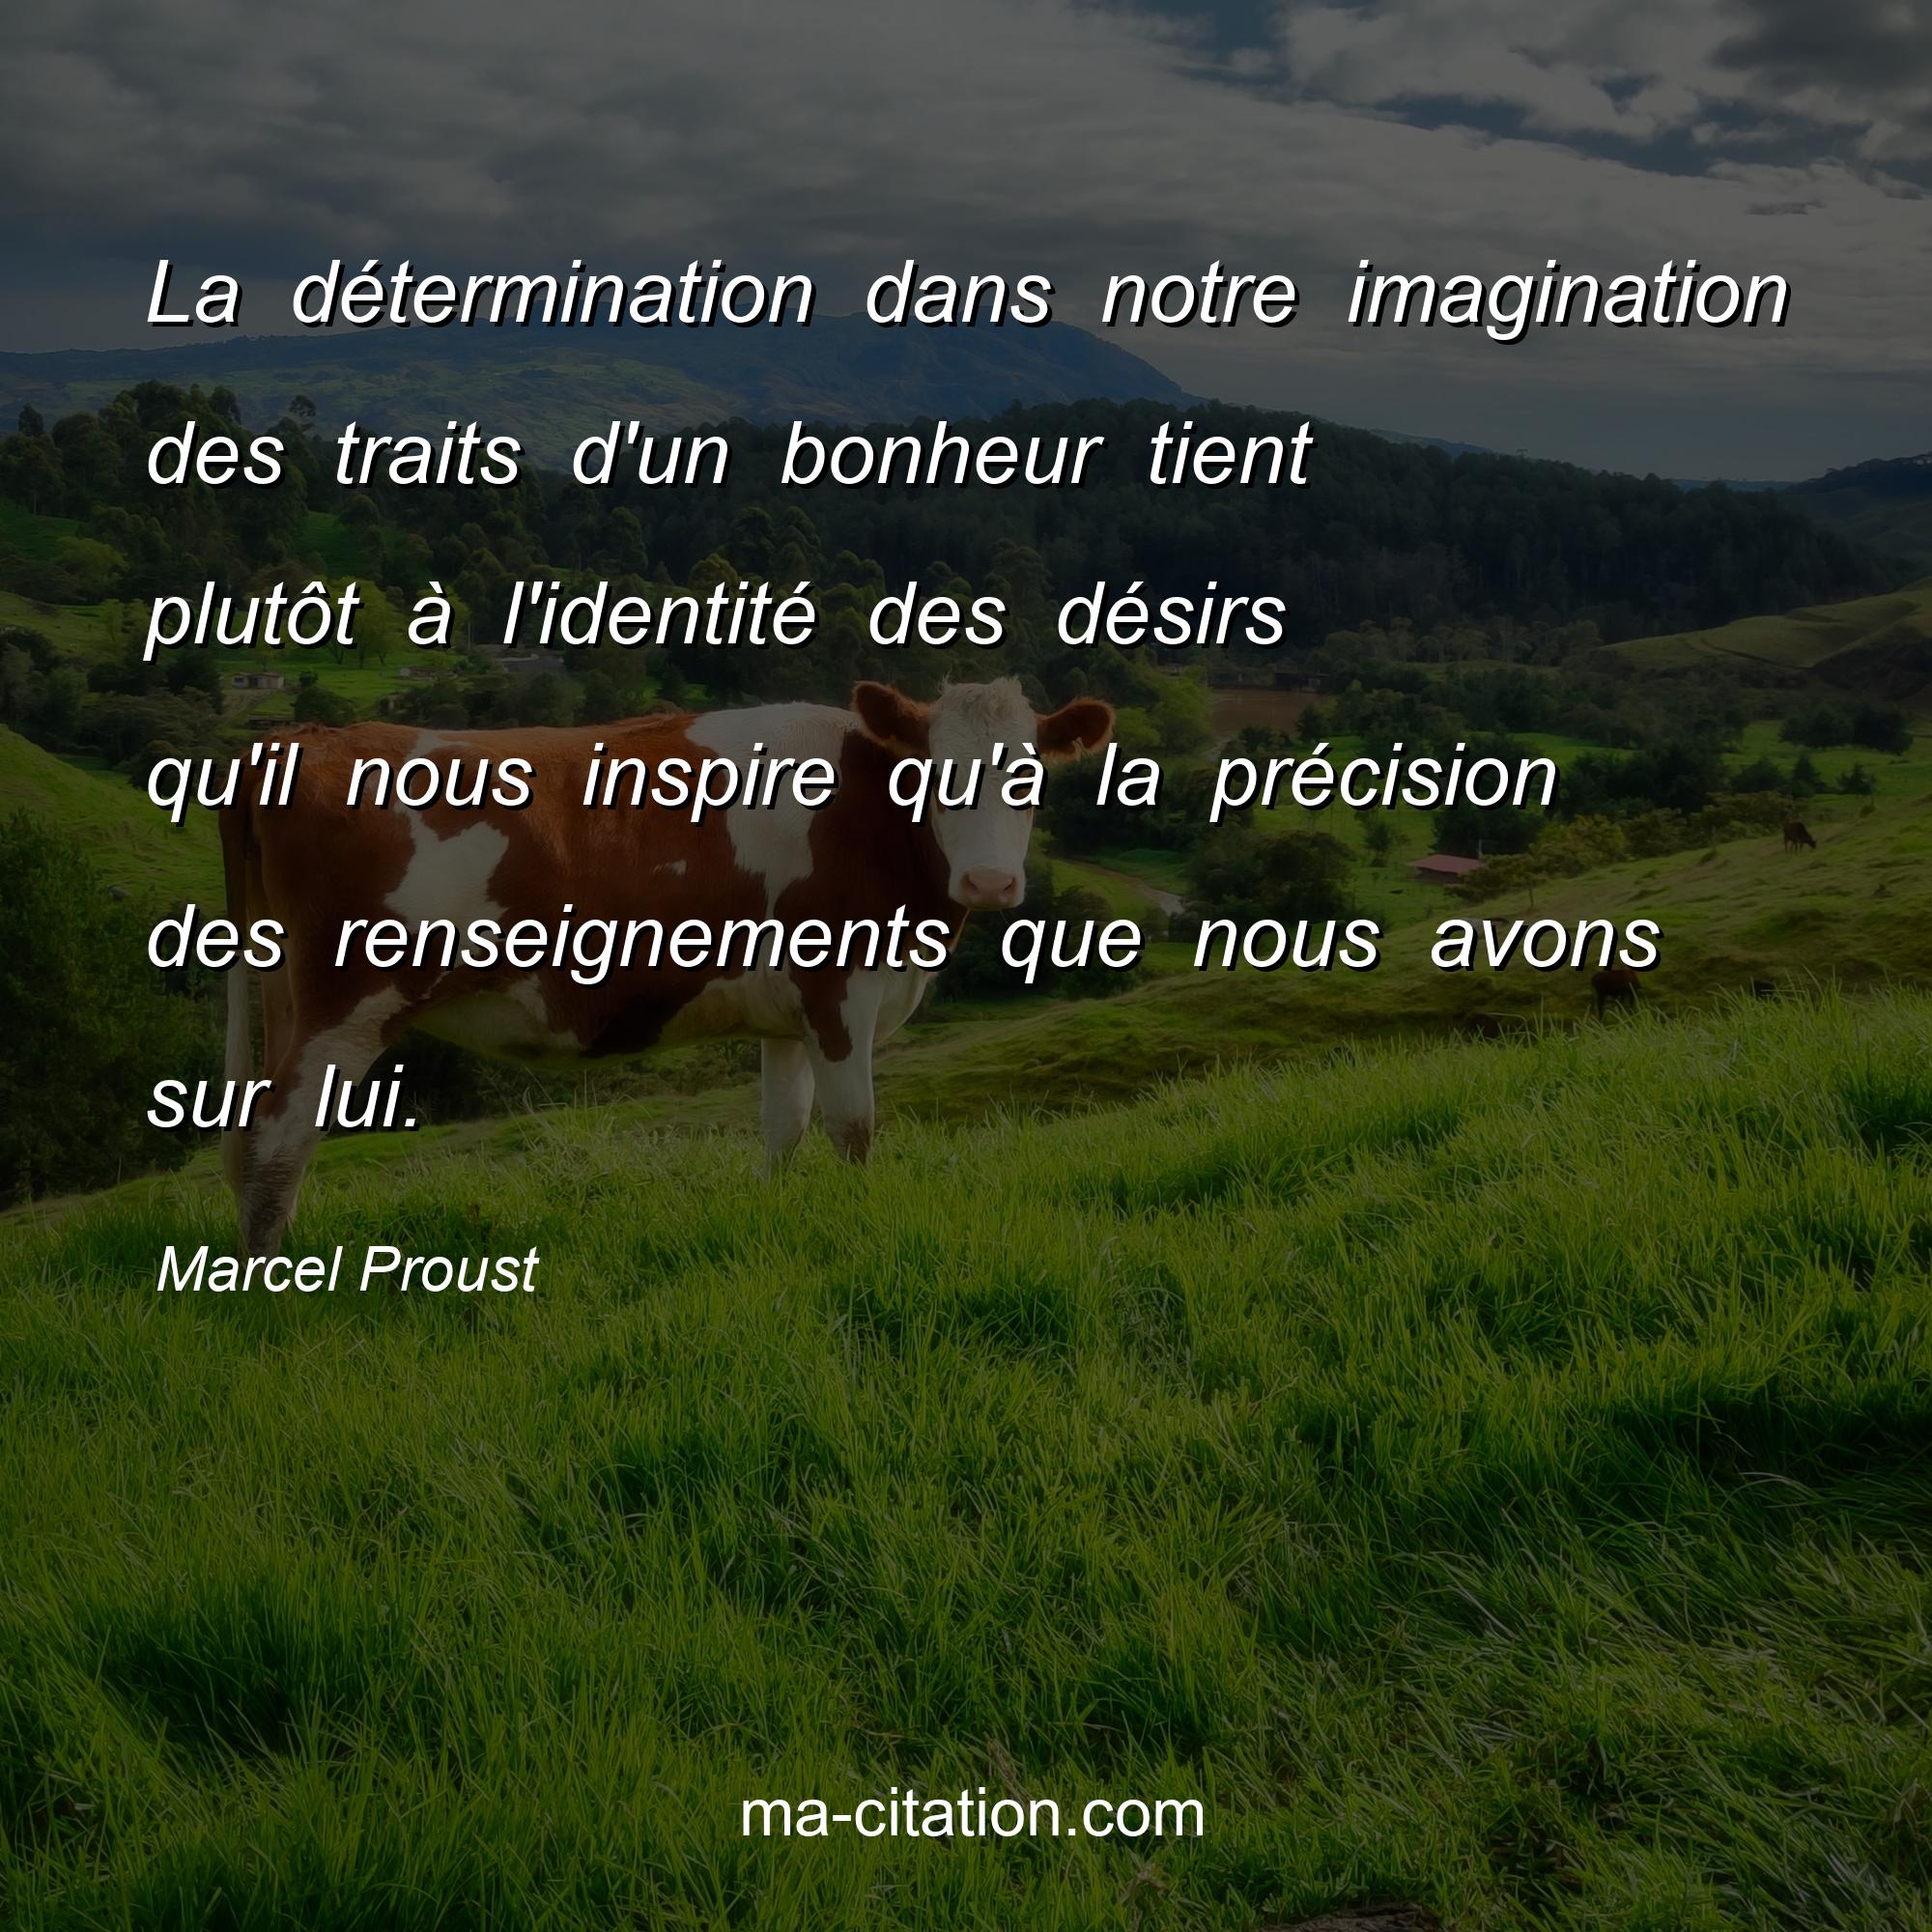 Marcel Proust : La détermination dans notre imagination des traits d'un bonheur tient plutôt à l'identité des désirs qu'il nous inspire qu'à la précision des renseignements que nous avons sur lui.